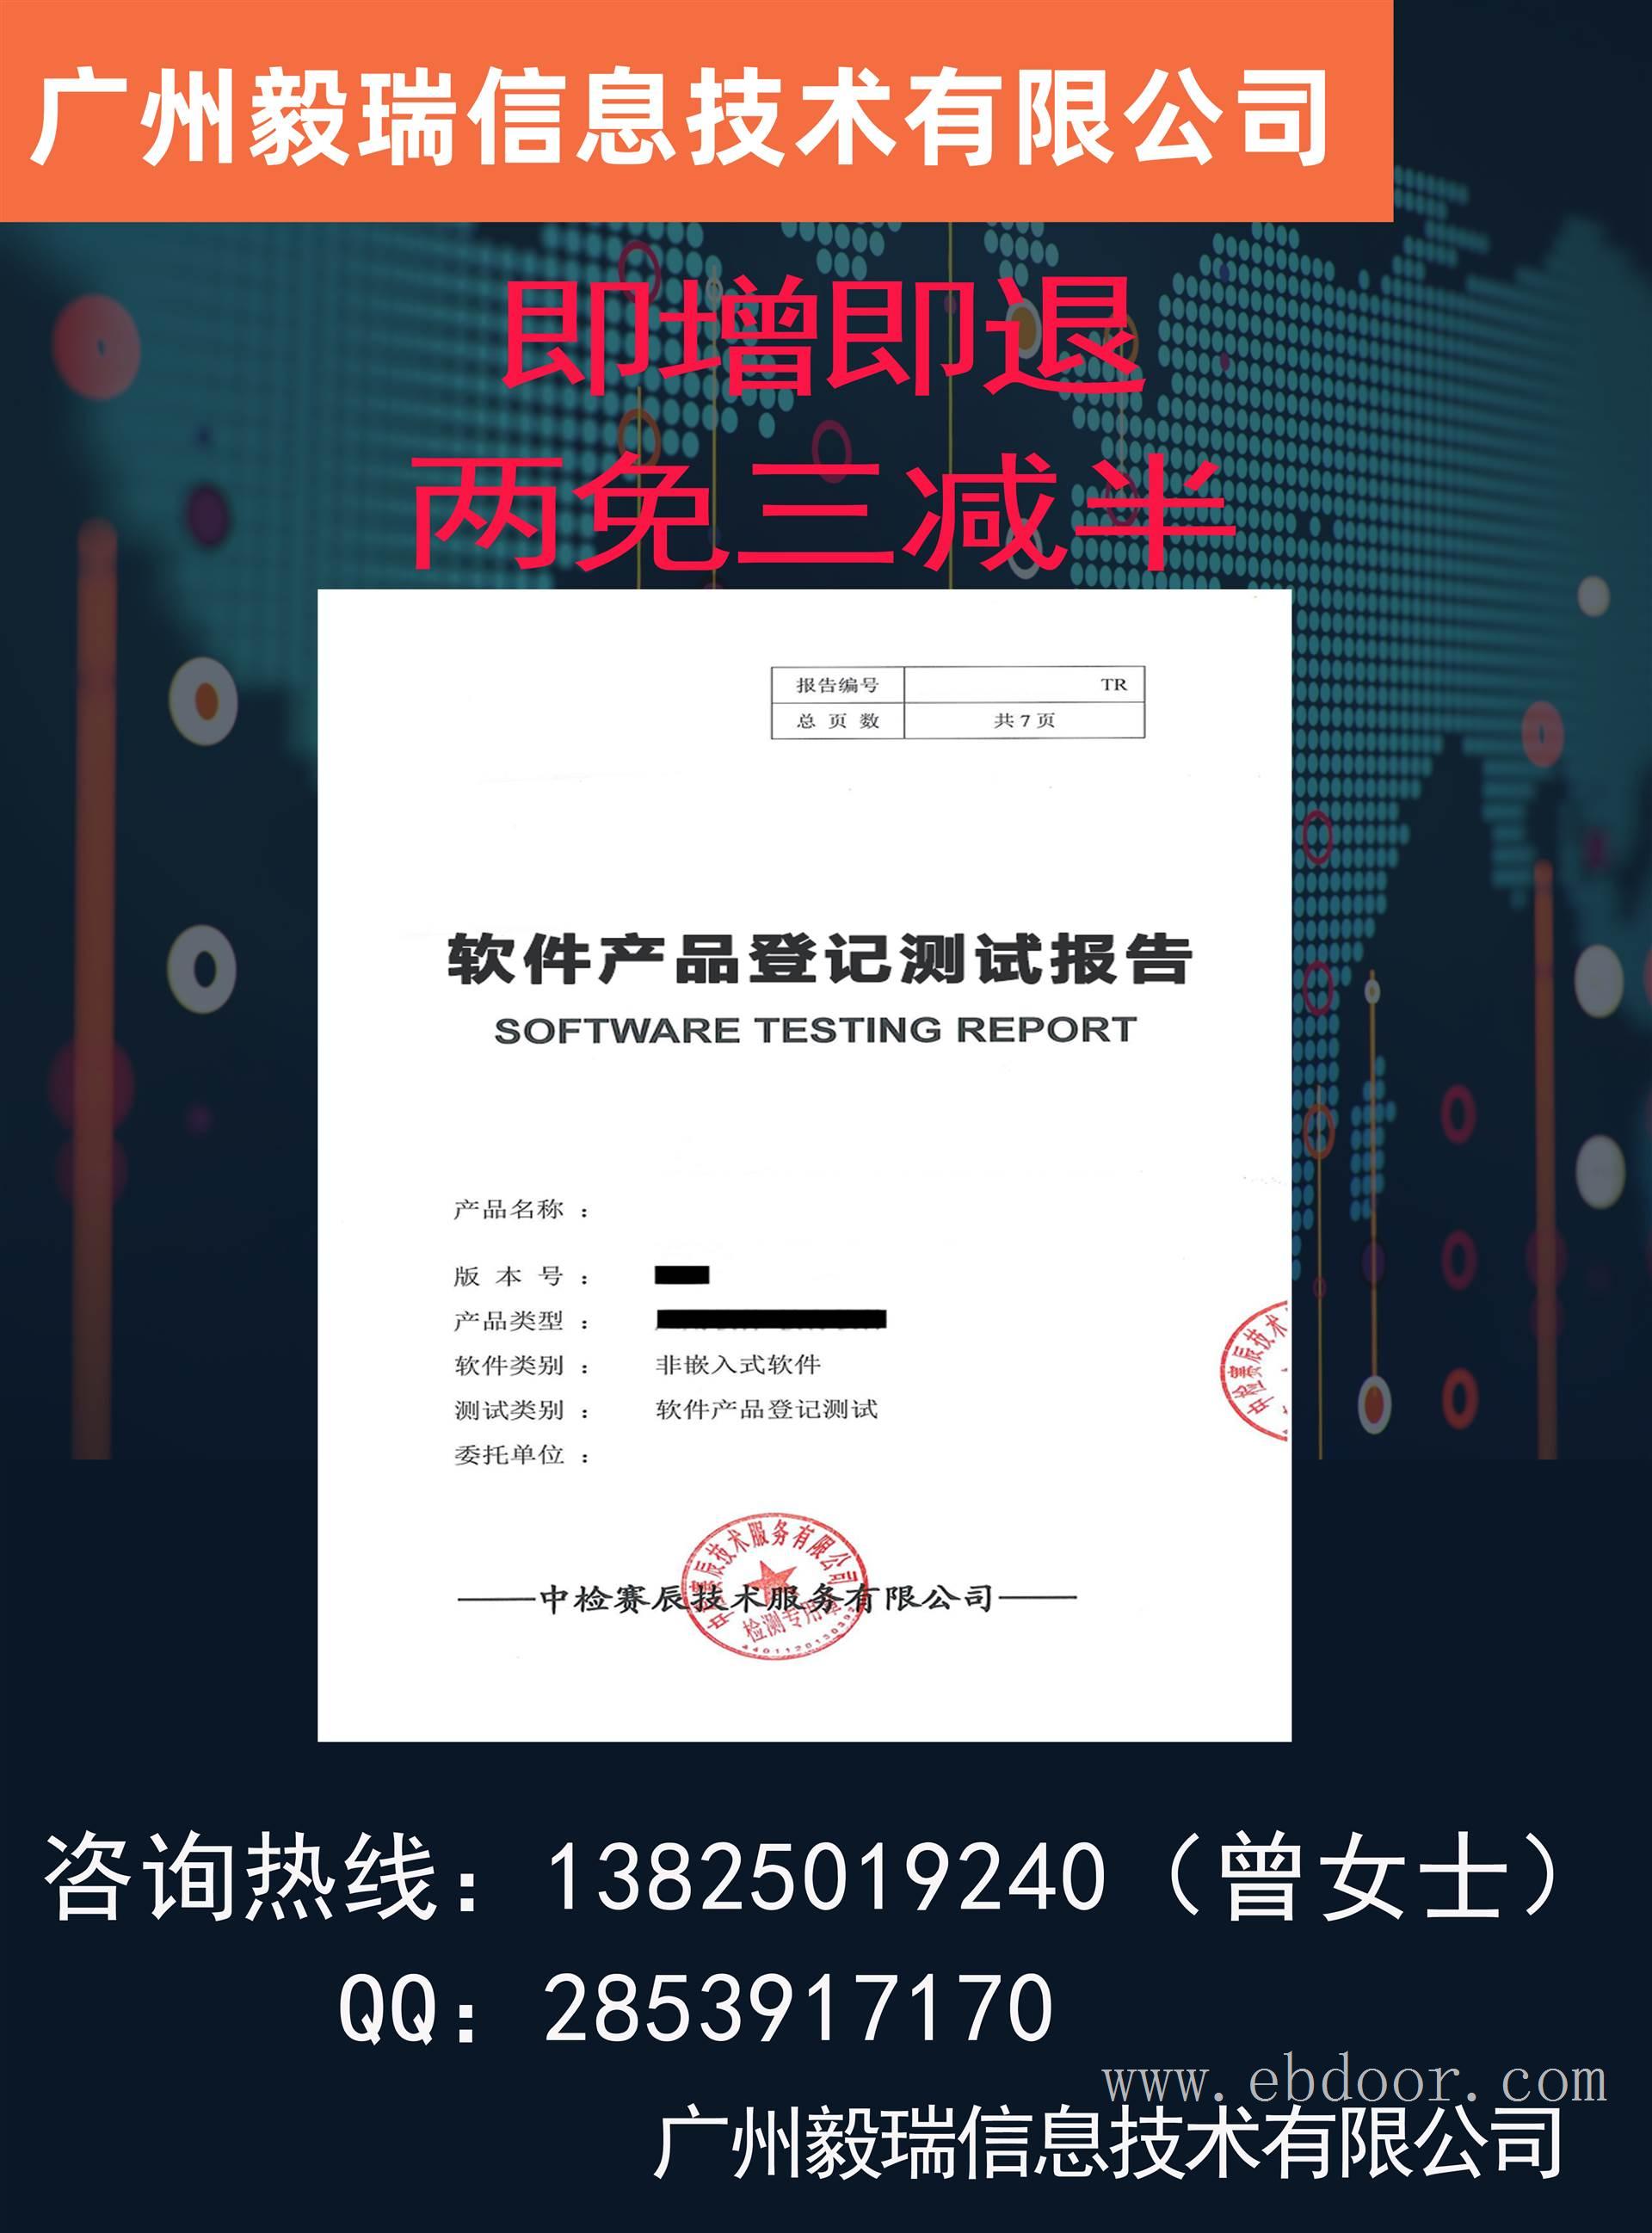 第三方软件评测机构 确认测试报告